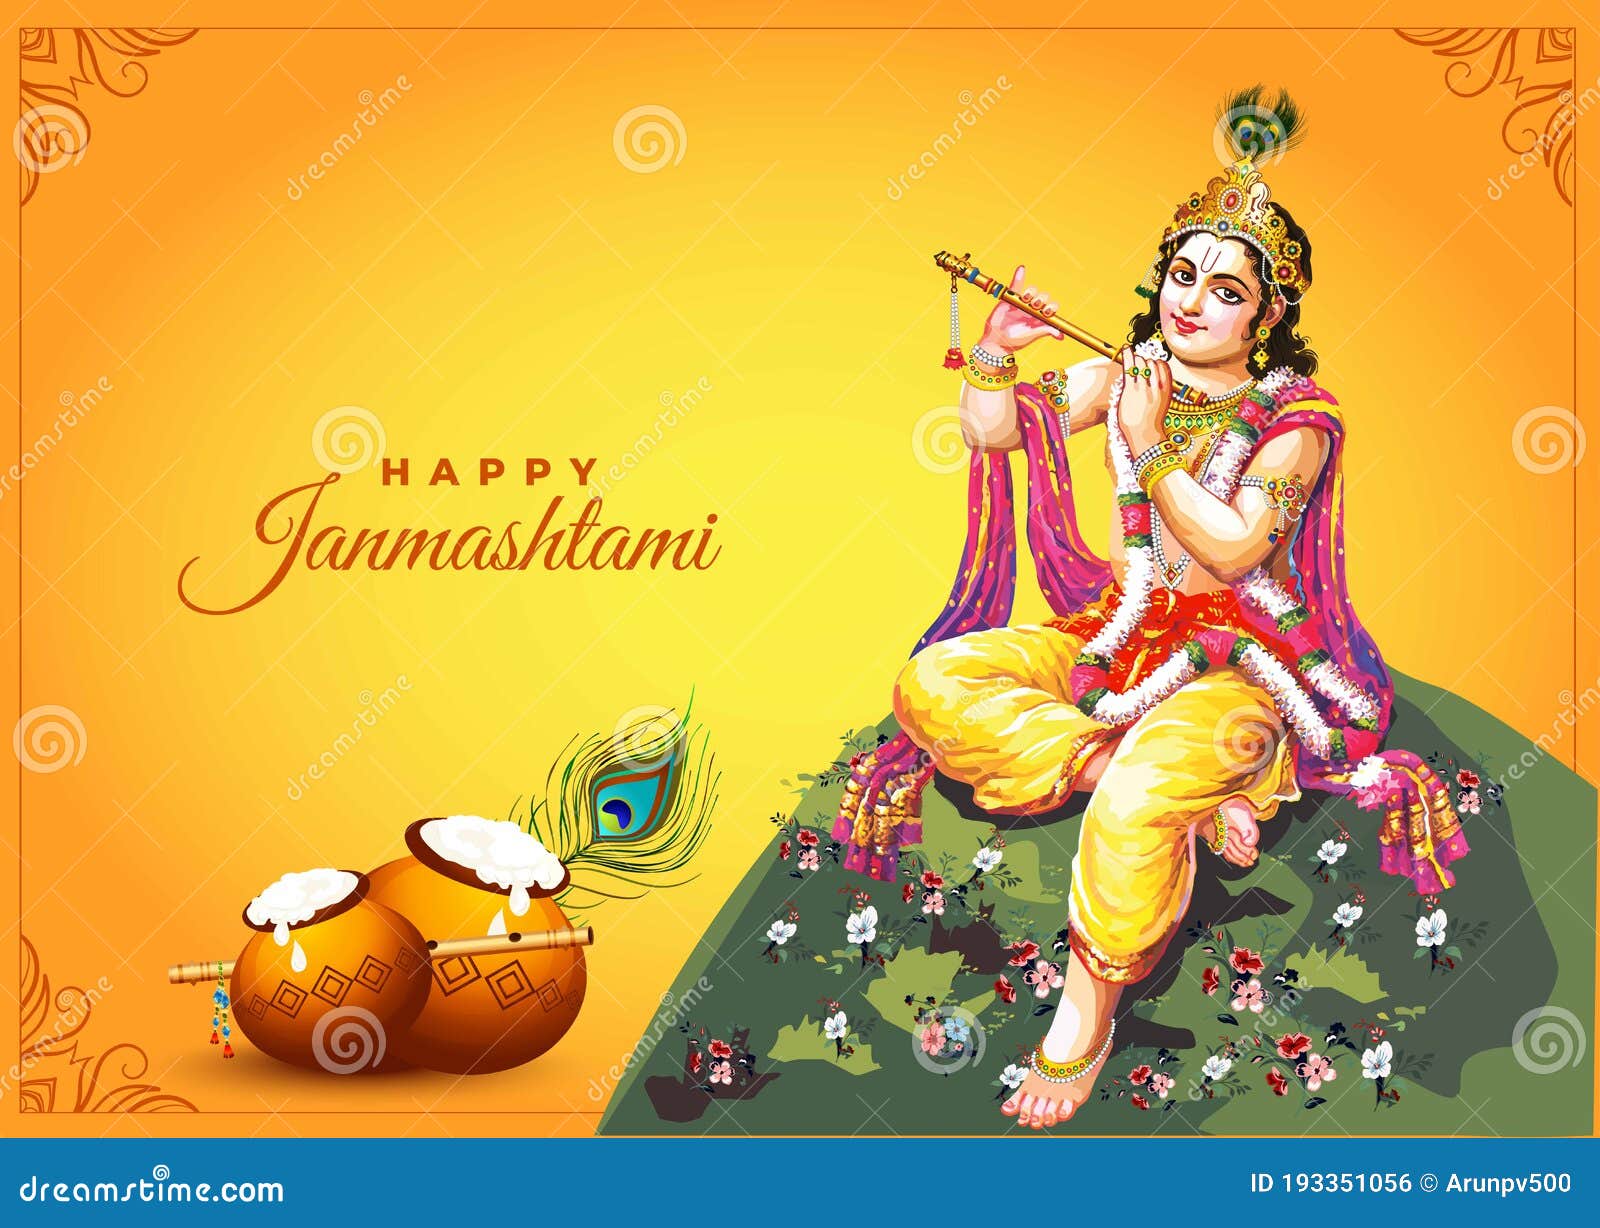 Happy Janmashtami Shayari Images | Shri Krishna Janmashtami Shayari Photos  | Janmashtami quotes, Happy janmashtami, Image quotes